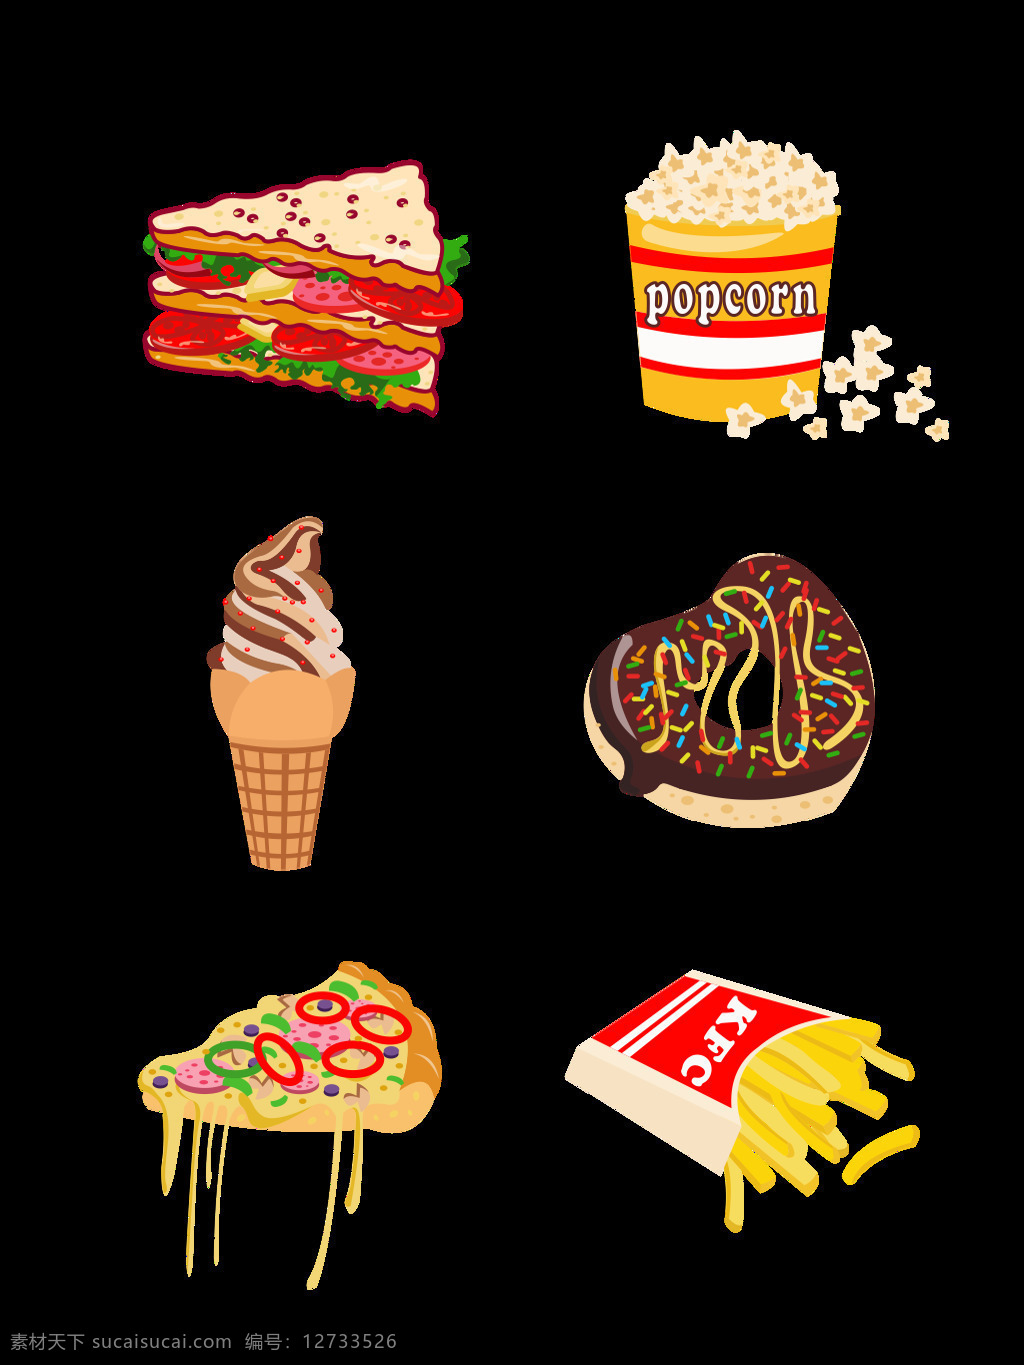 卡通 可爱 美食 元素 套 图 卡通可爱 爆米花 冰淇淋 披萨 元素设计 三明治 甜甜圈 薯条